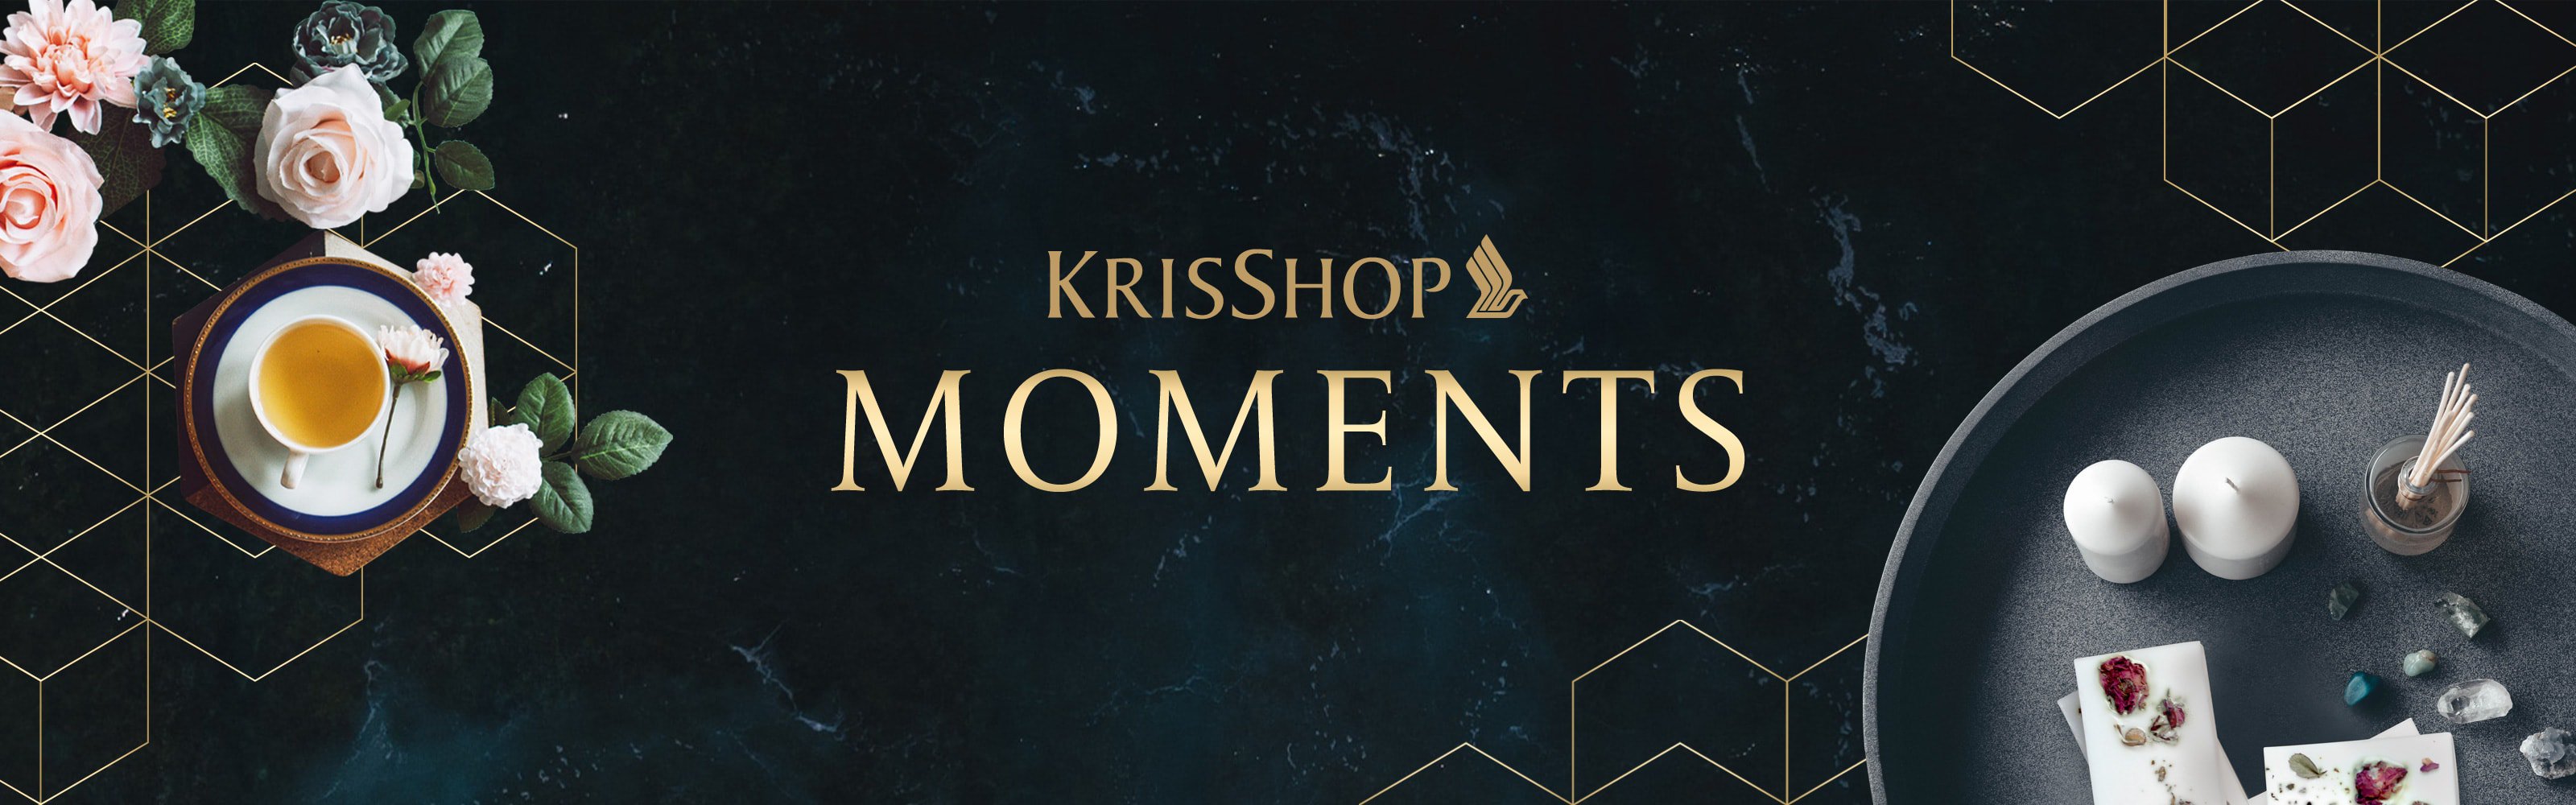 KrisShop Moments